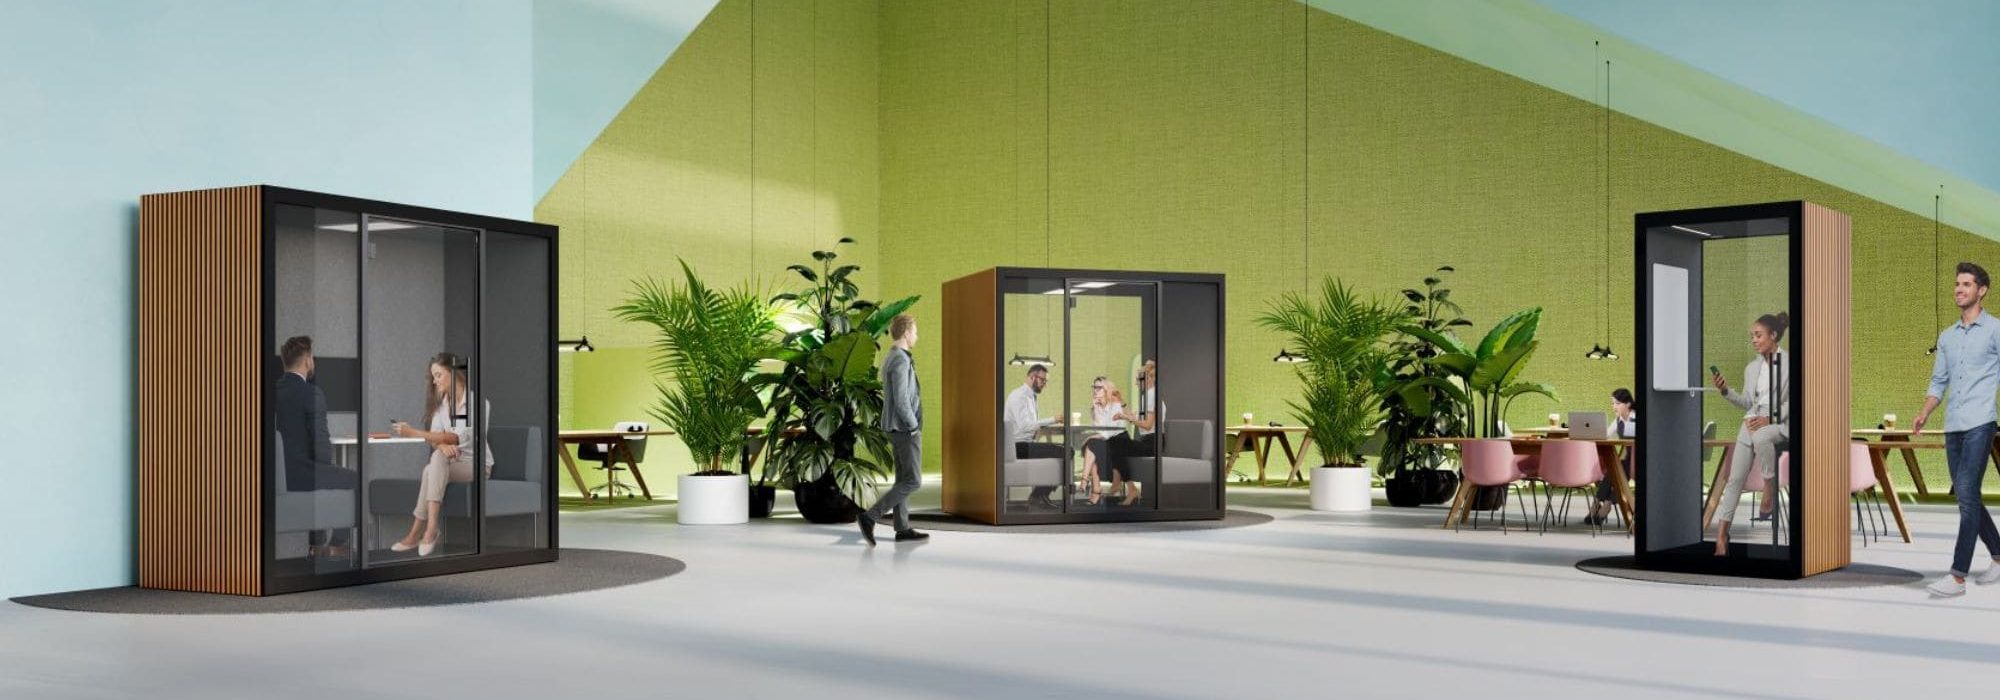 Meetingbox Büro für eins bis vier personen im Großraumbüro